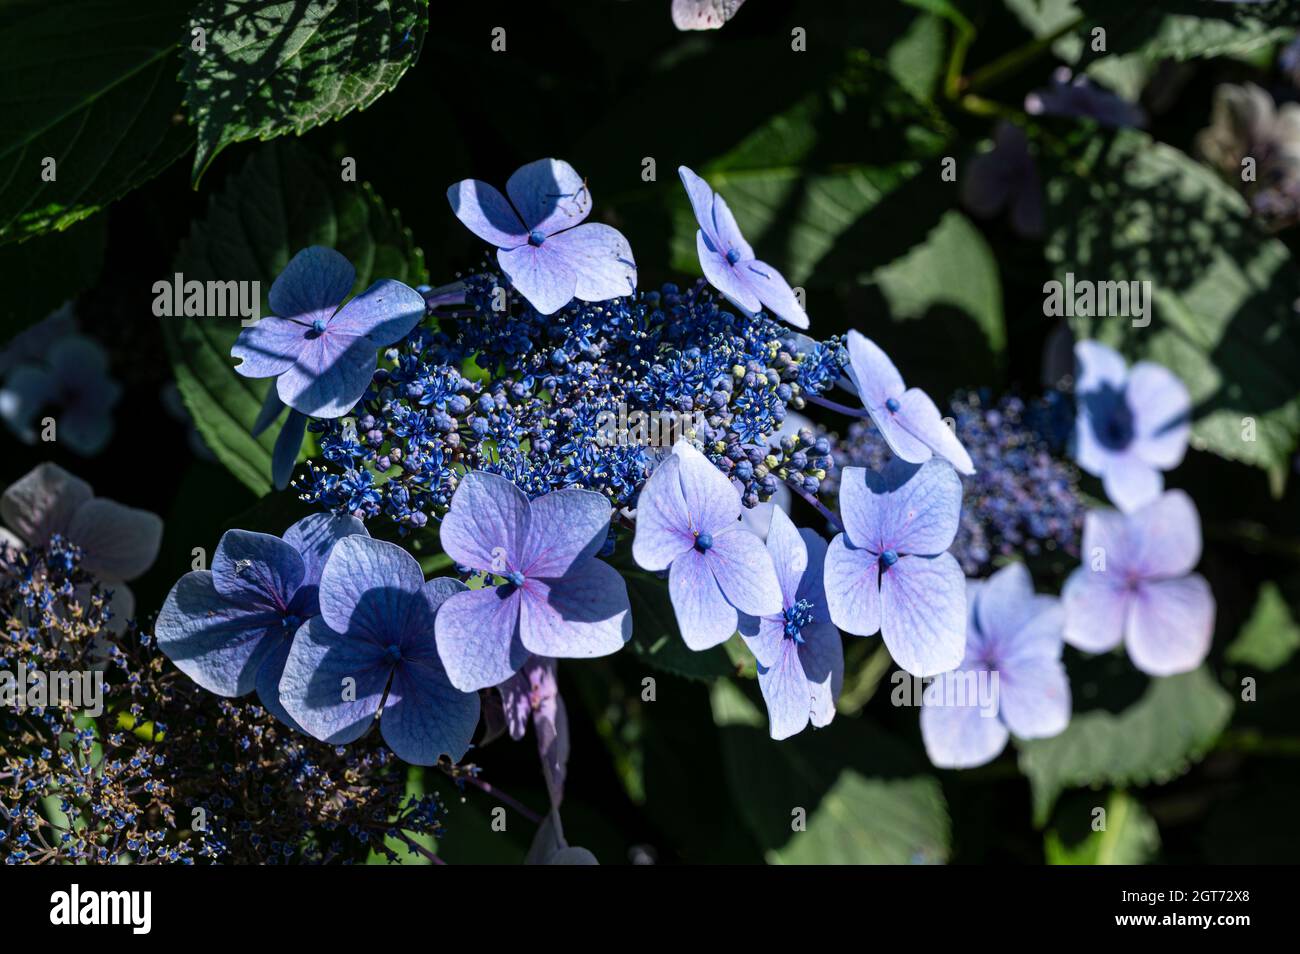 Hydrangea Serrata Bluebird, Hydrangea serrata Acuminata,Hydrangea serrata f. acuminata,Hydrangea acuminata,Hydrangea serrata var. acuminate,Hydrangea Stock Photo